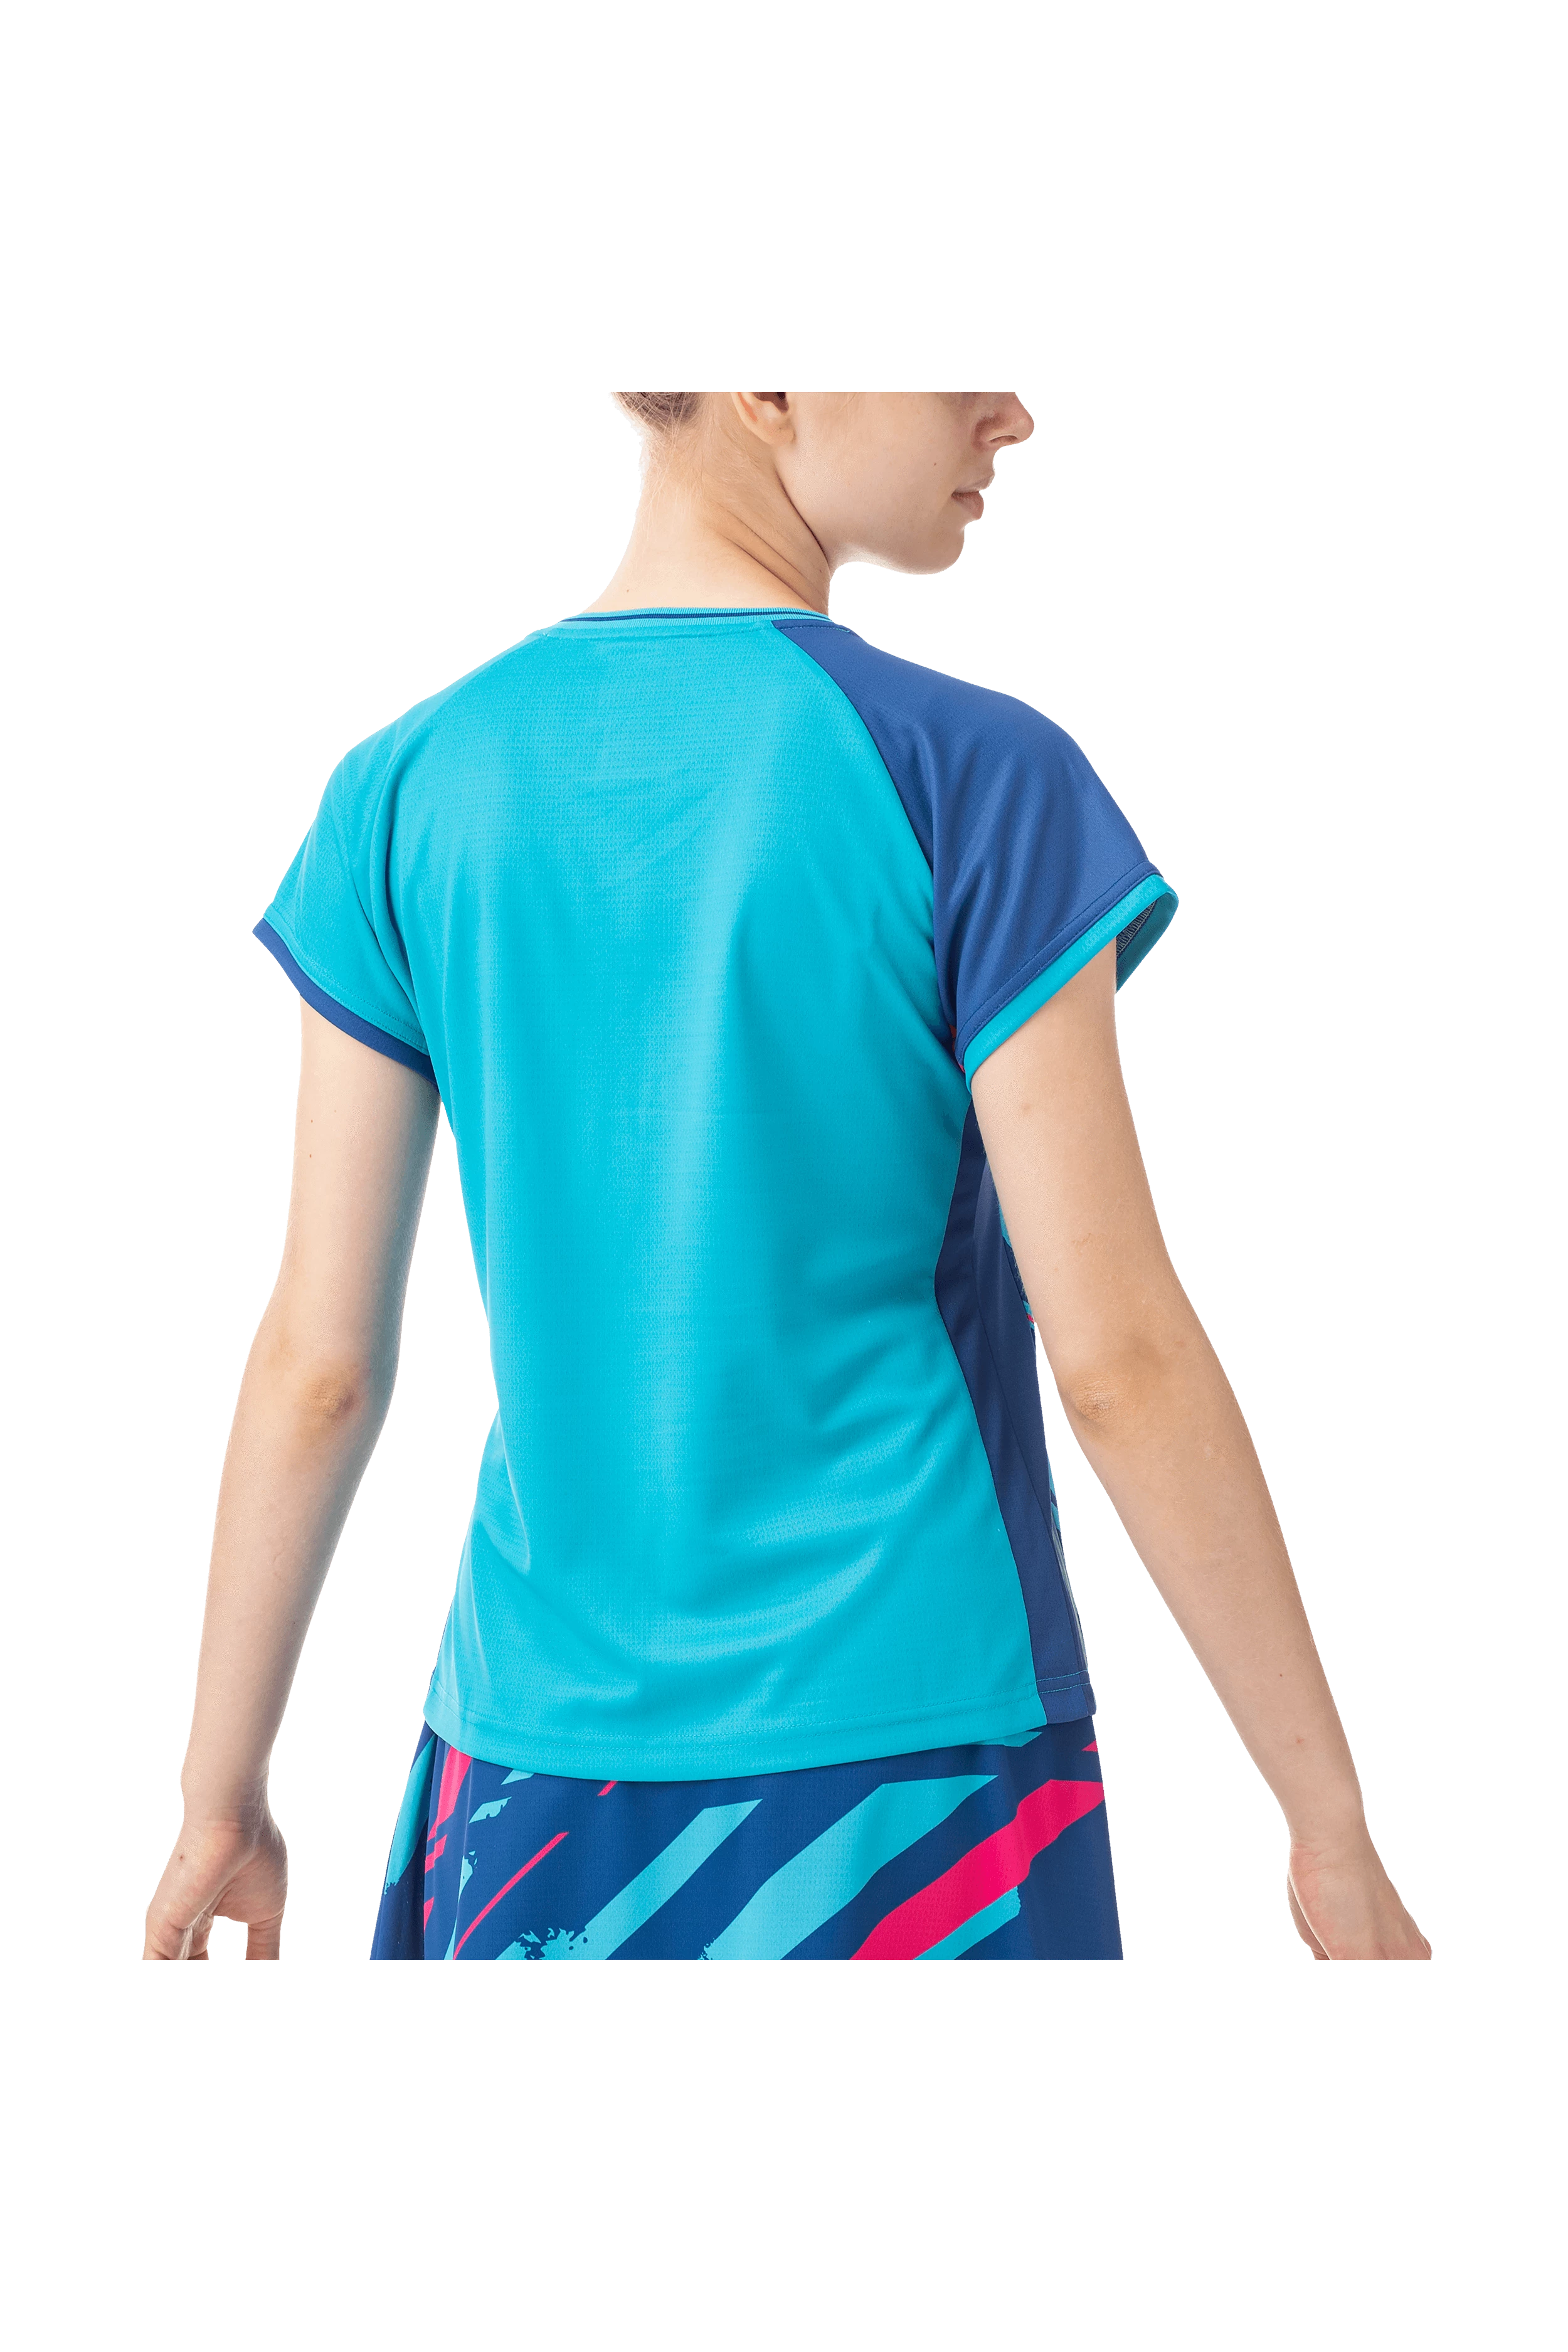 Yonex Women's Tournament Shirt 20640 (Turquoise)